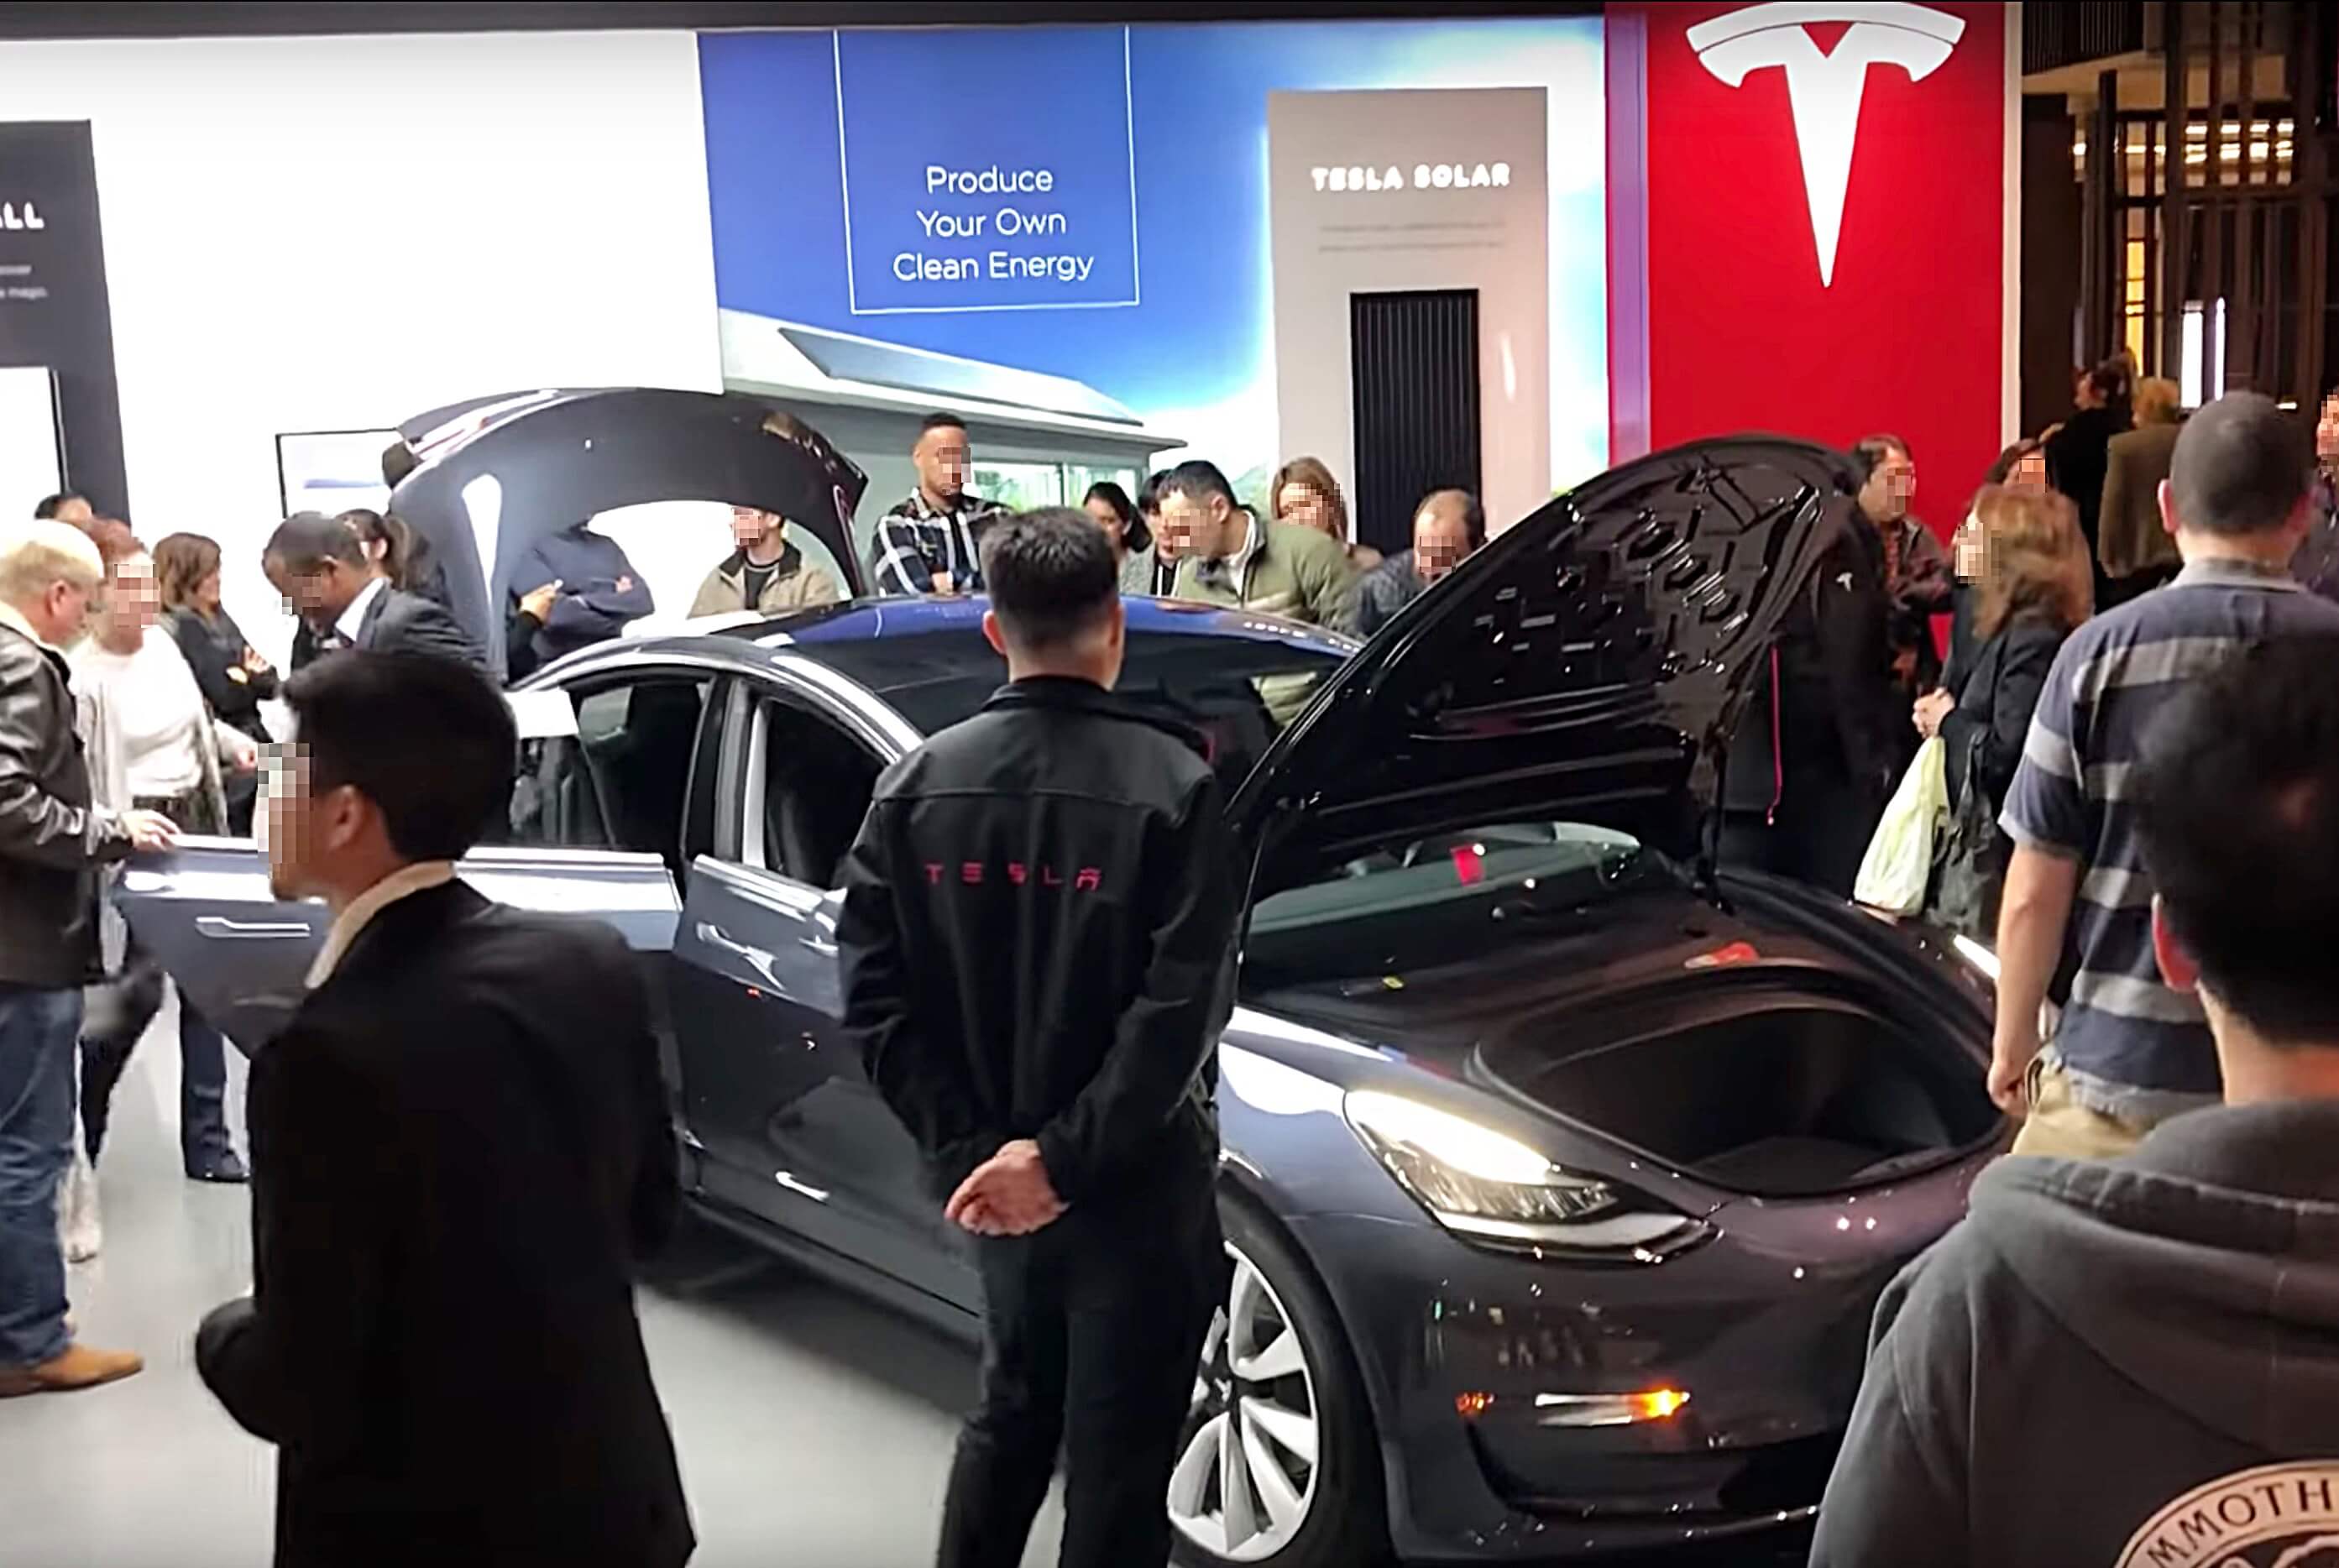 L’intérêt de Tesla est monté en flèche sur le site d’Edmunds suite aux baisses de prix